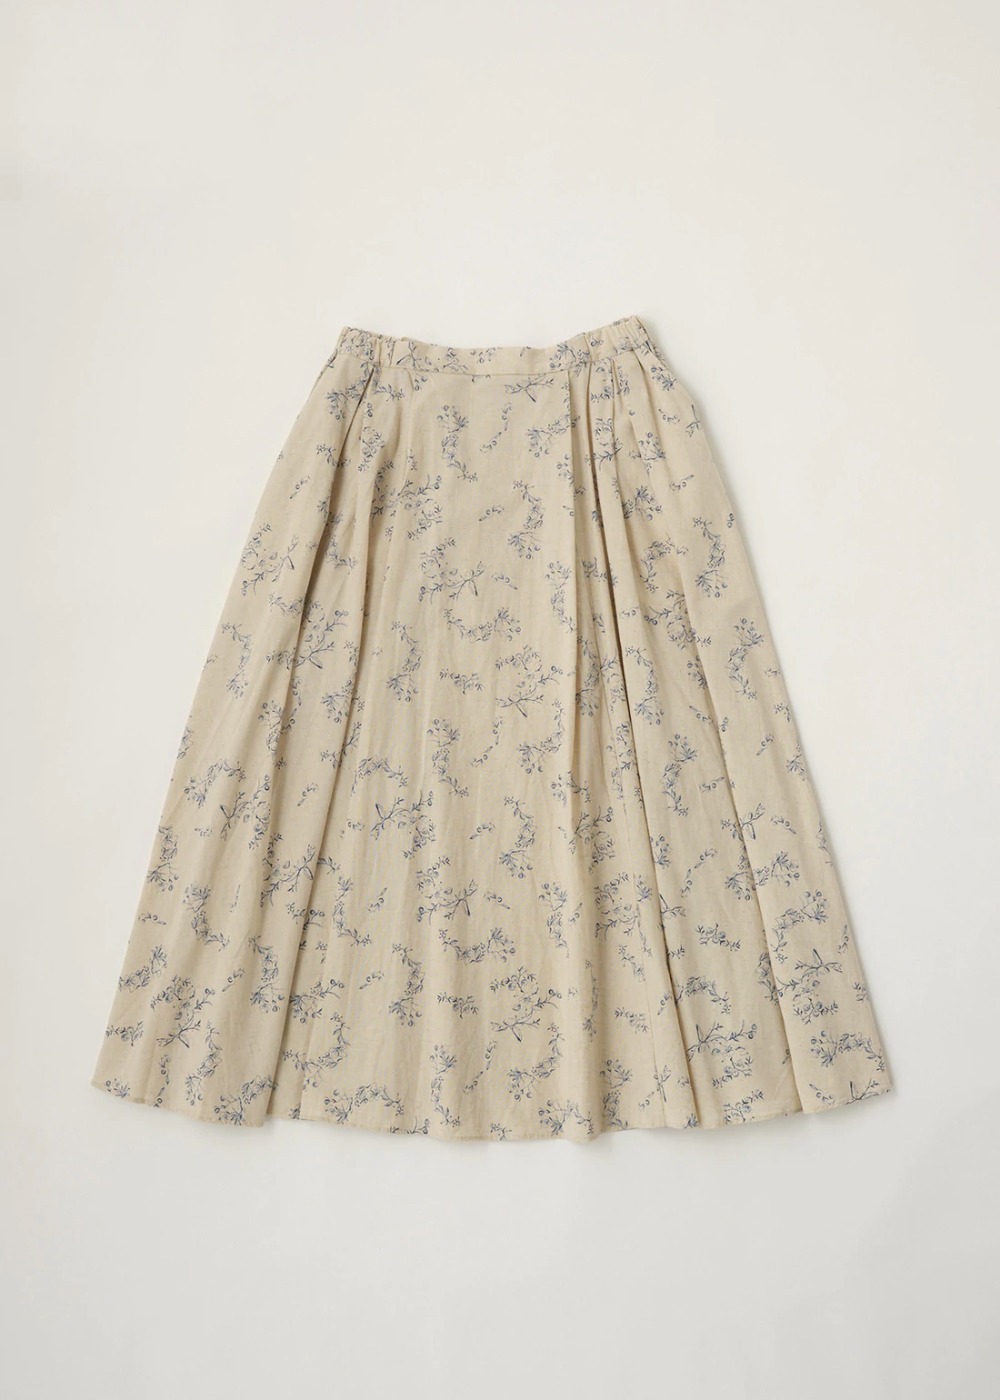 Flower Print Skirt